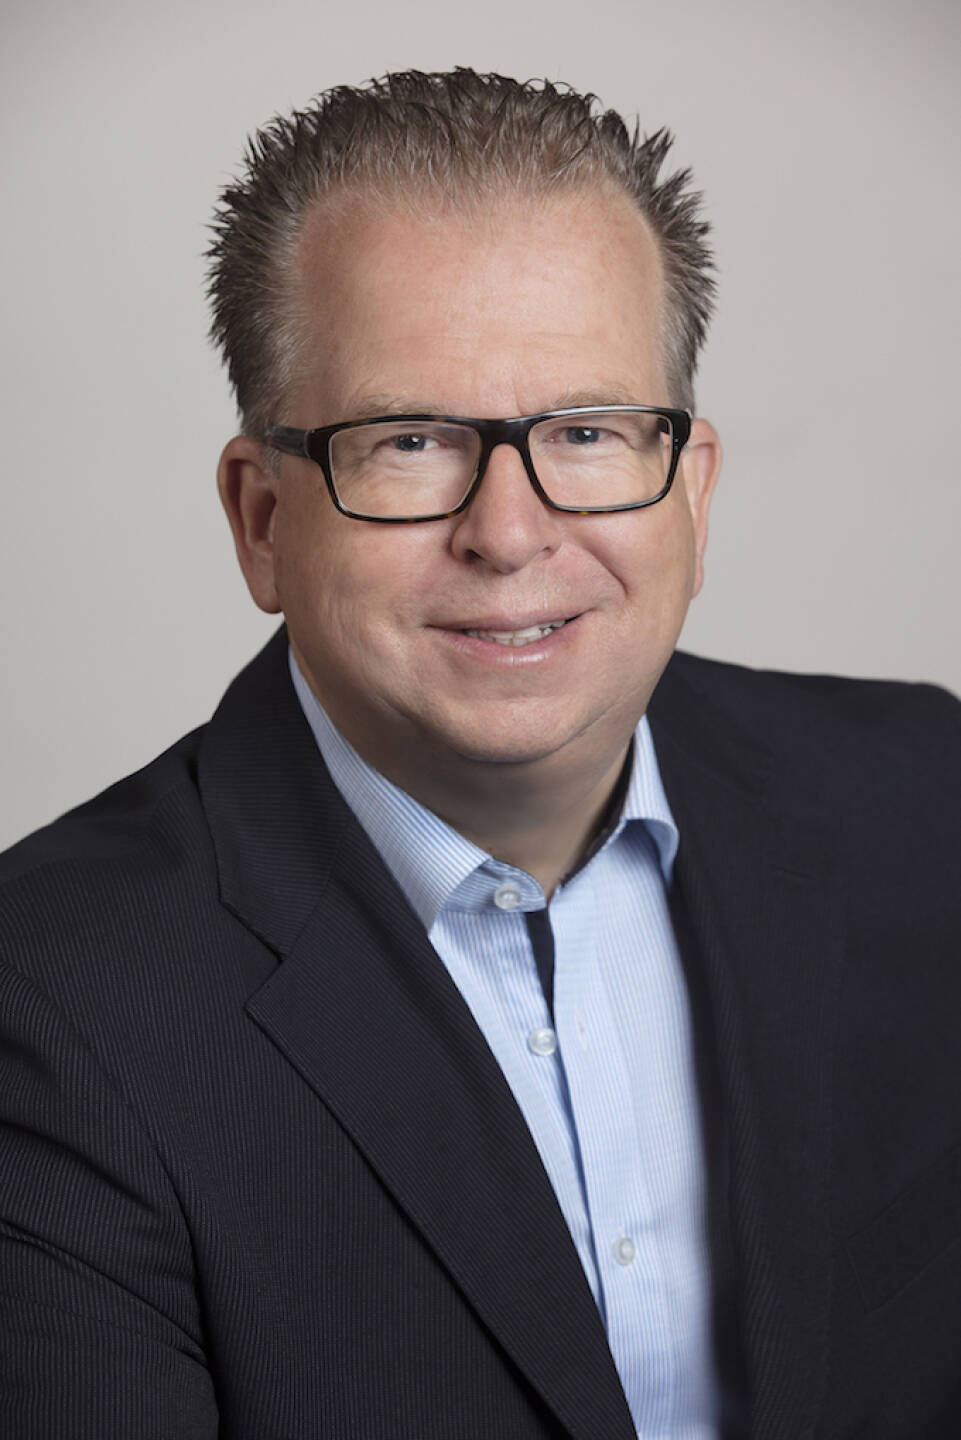 DJE Kapital AG: Thorsten Schrieber, im Vorstand verantwortlich für Vertrieb, Sales Support sowie Marketing und PR, Credit: DJE